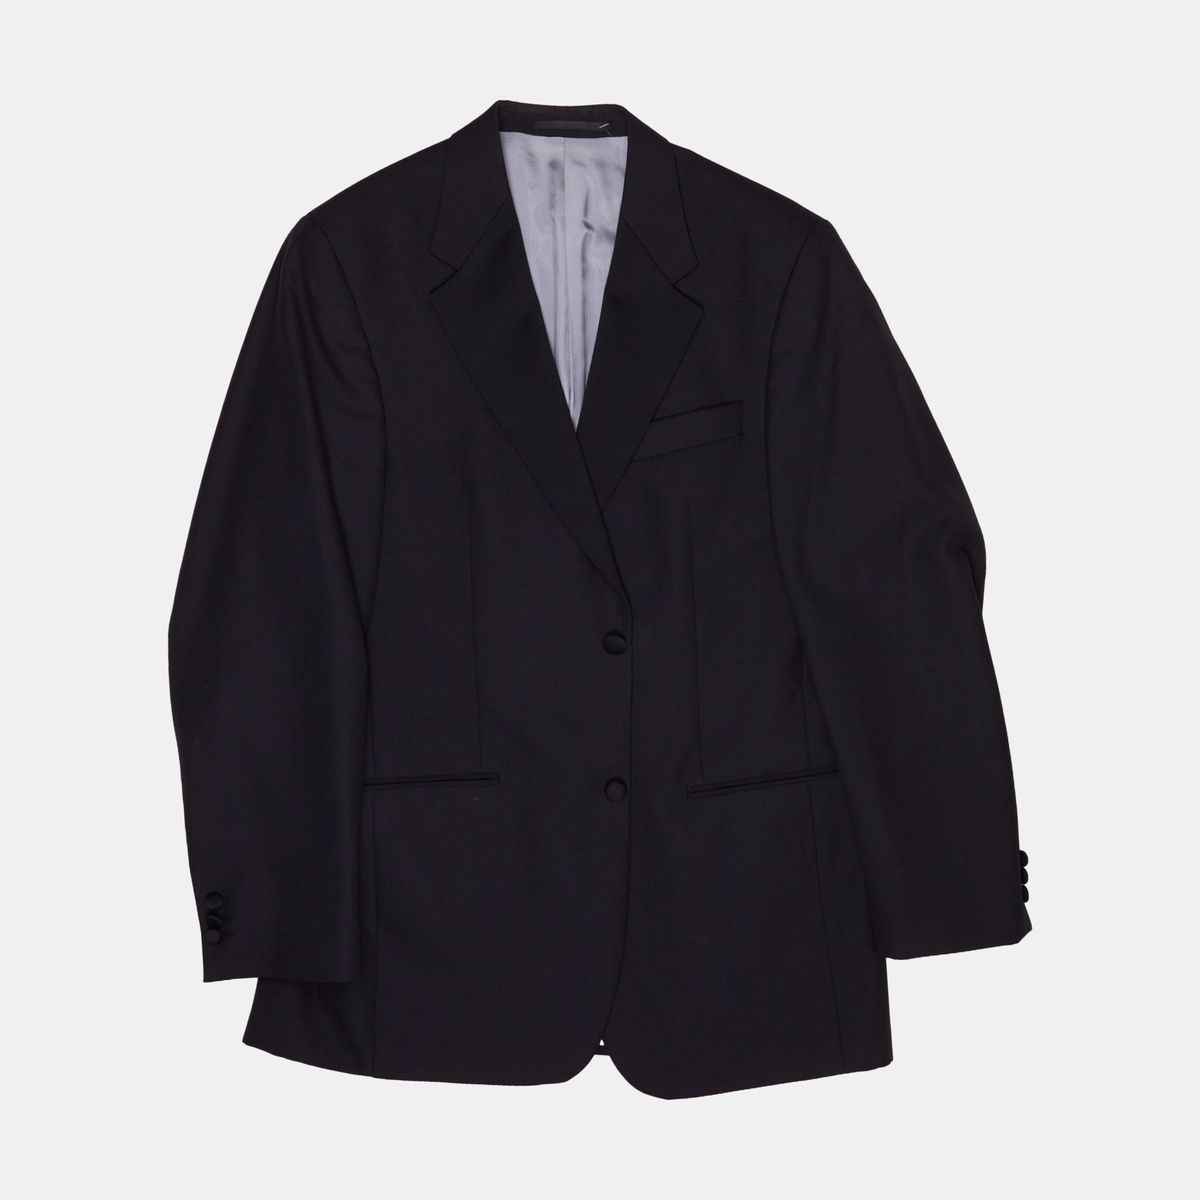 Men's Second-Hand Suits – Haru